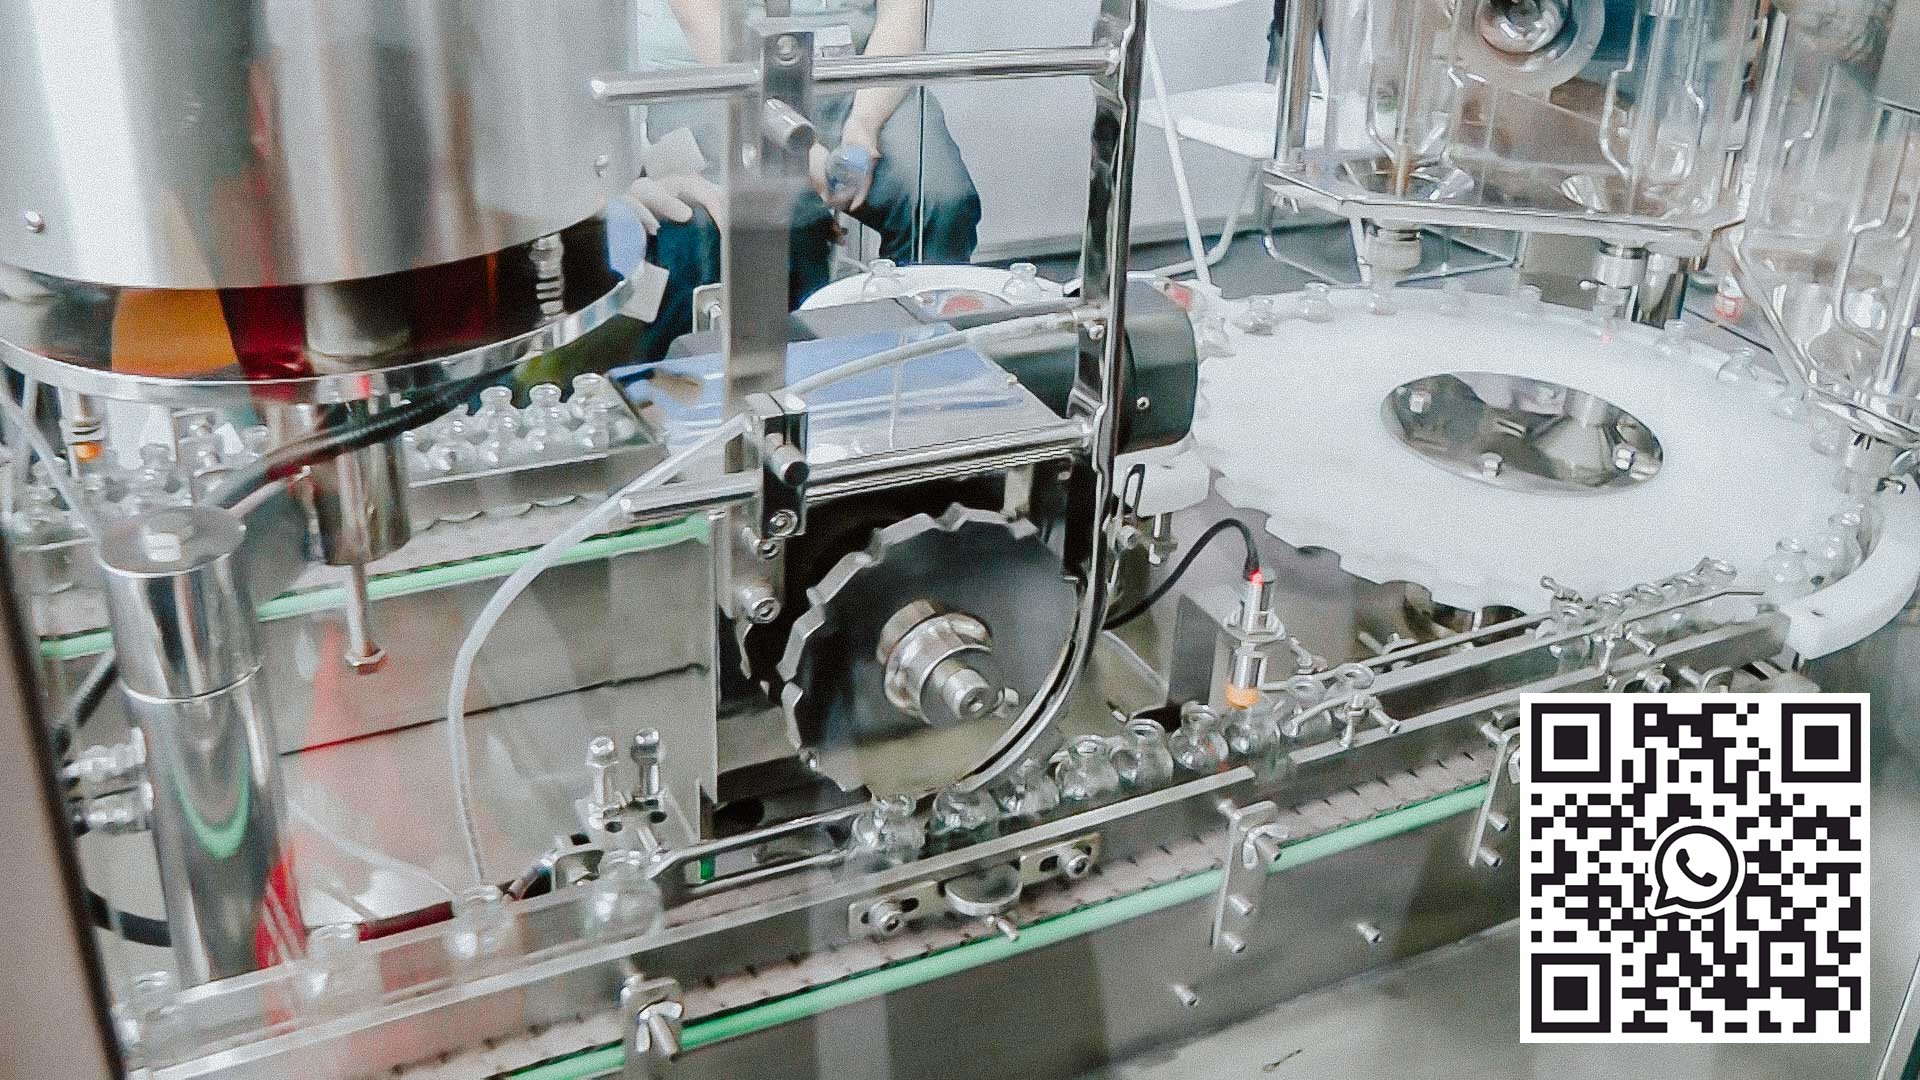 آلة تعبئة وتغليف أوتوماتيكية للبنسلين مع غطاء من الألومنيوم